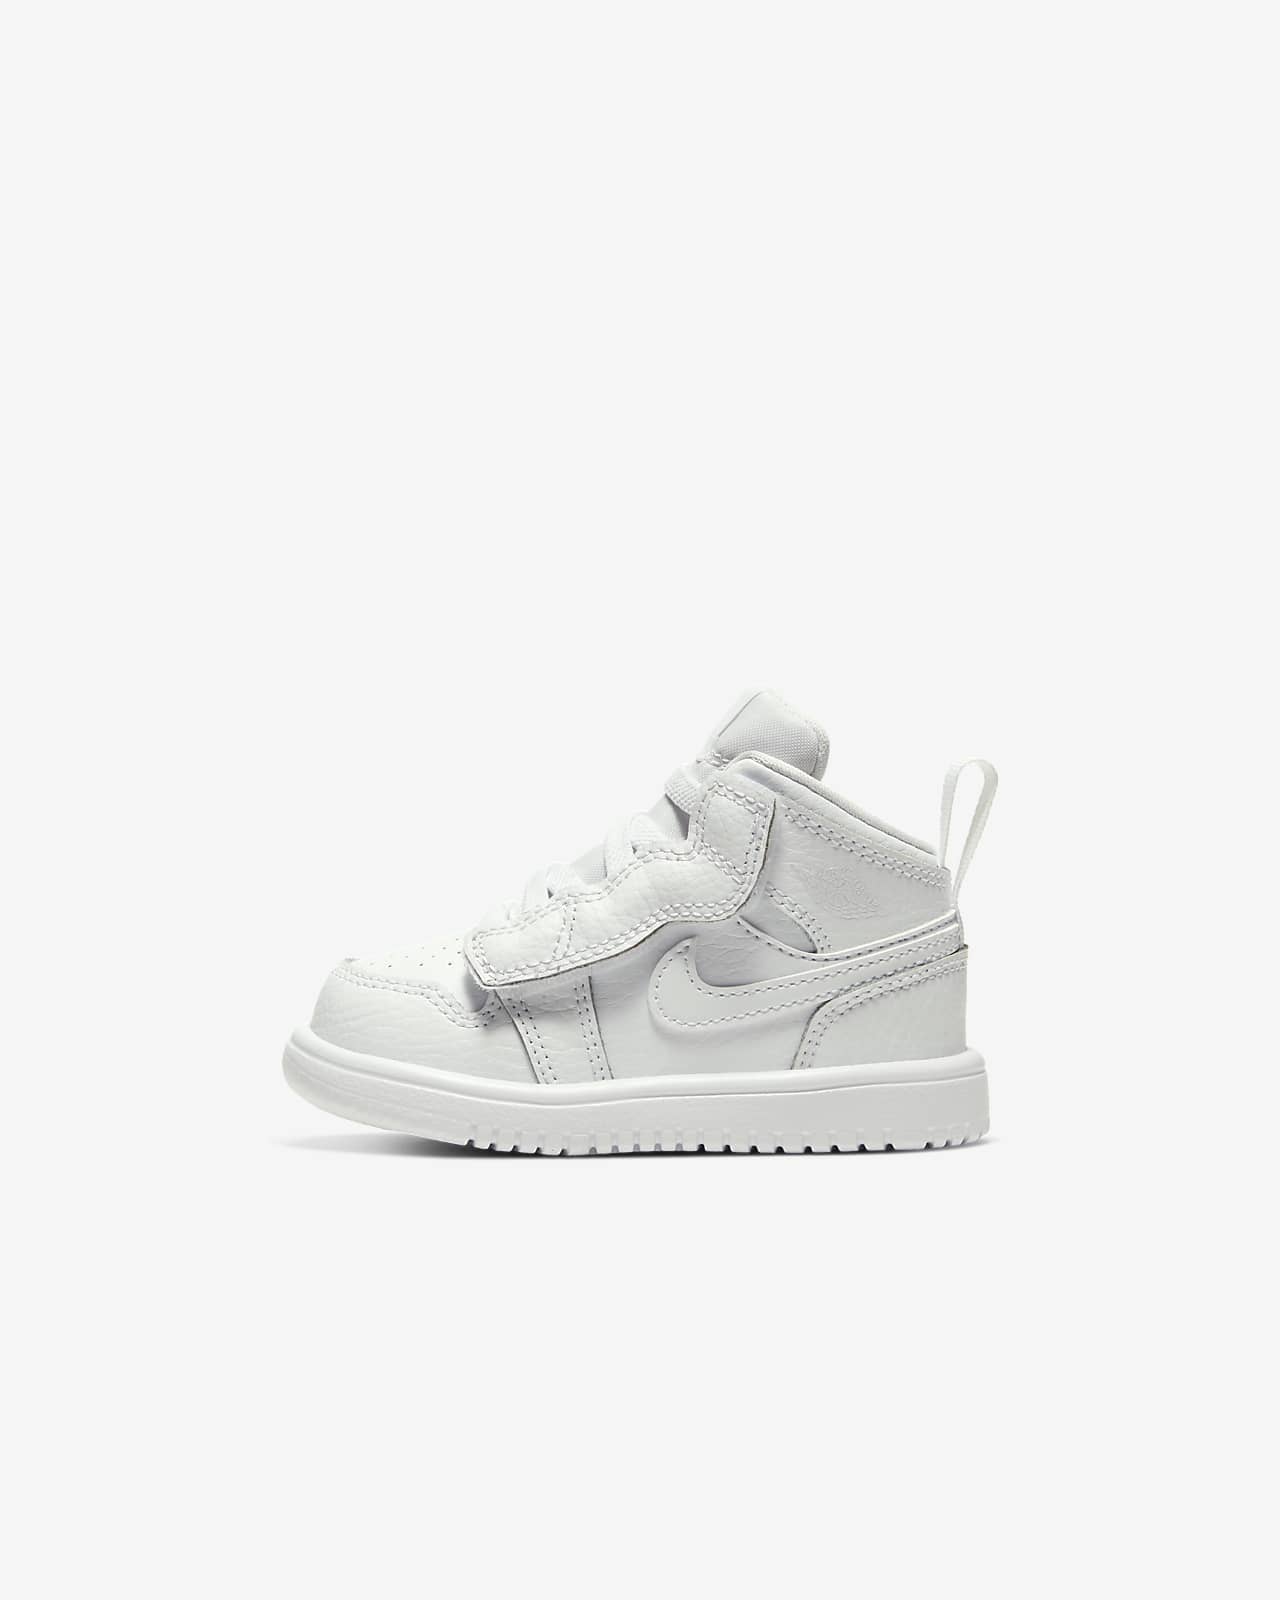 Jordan 1 Mid Infant/Toddler Shoes. Nike JP